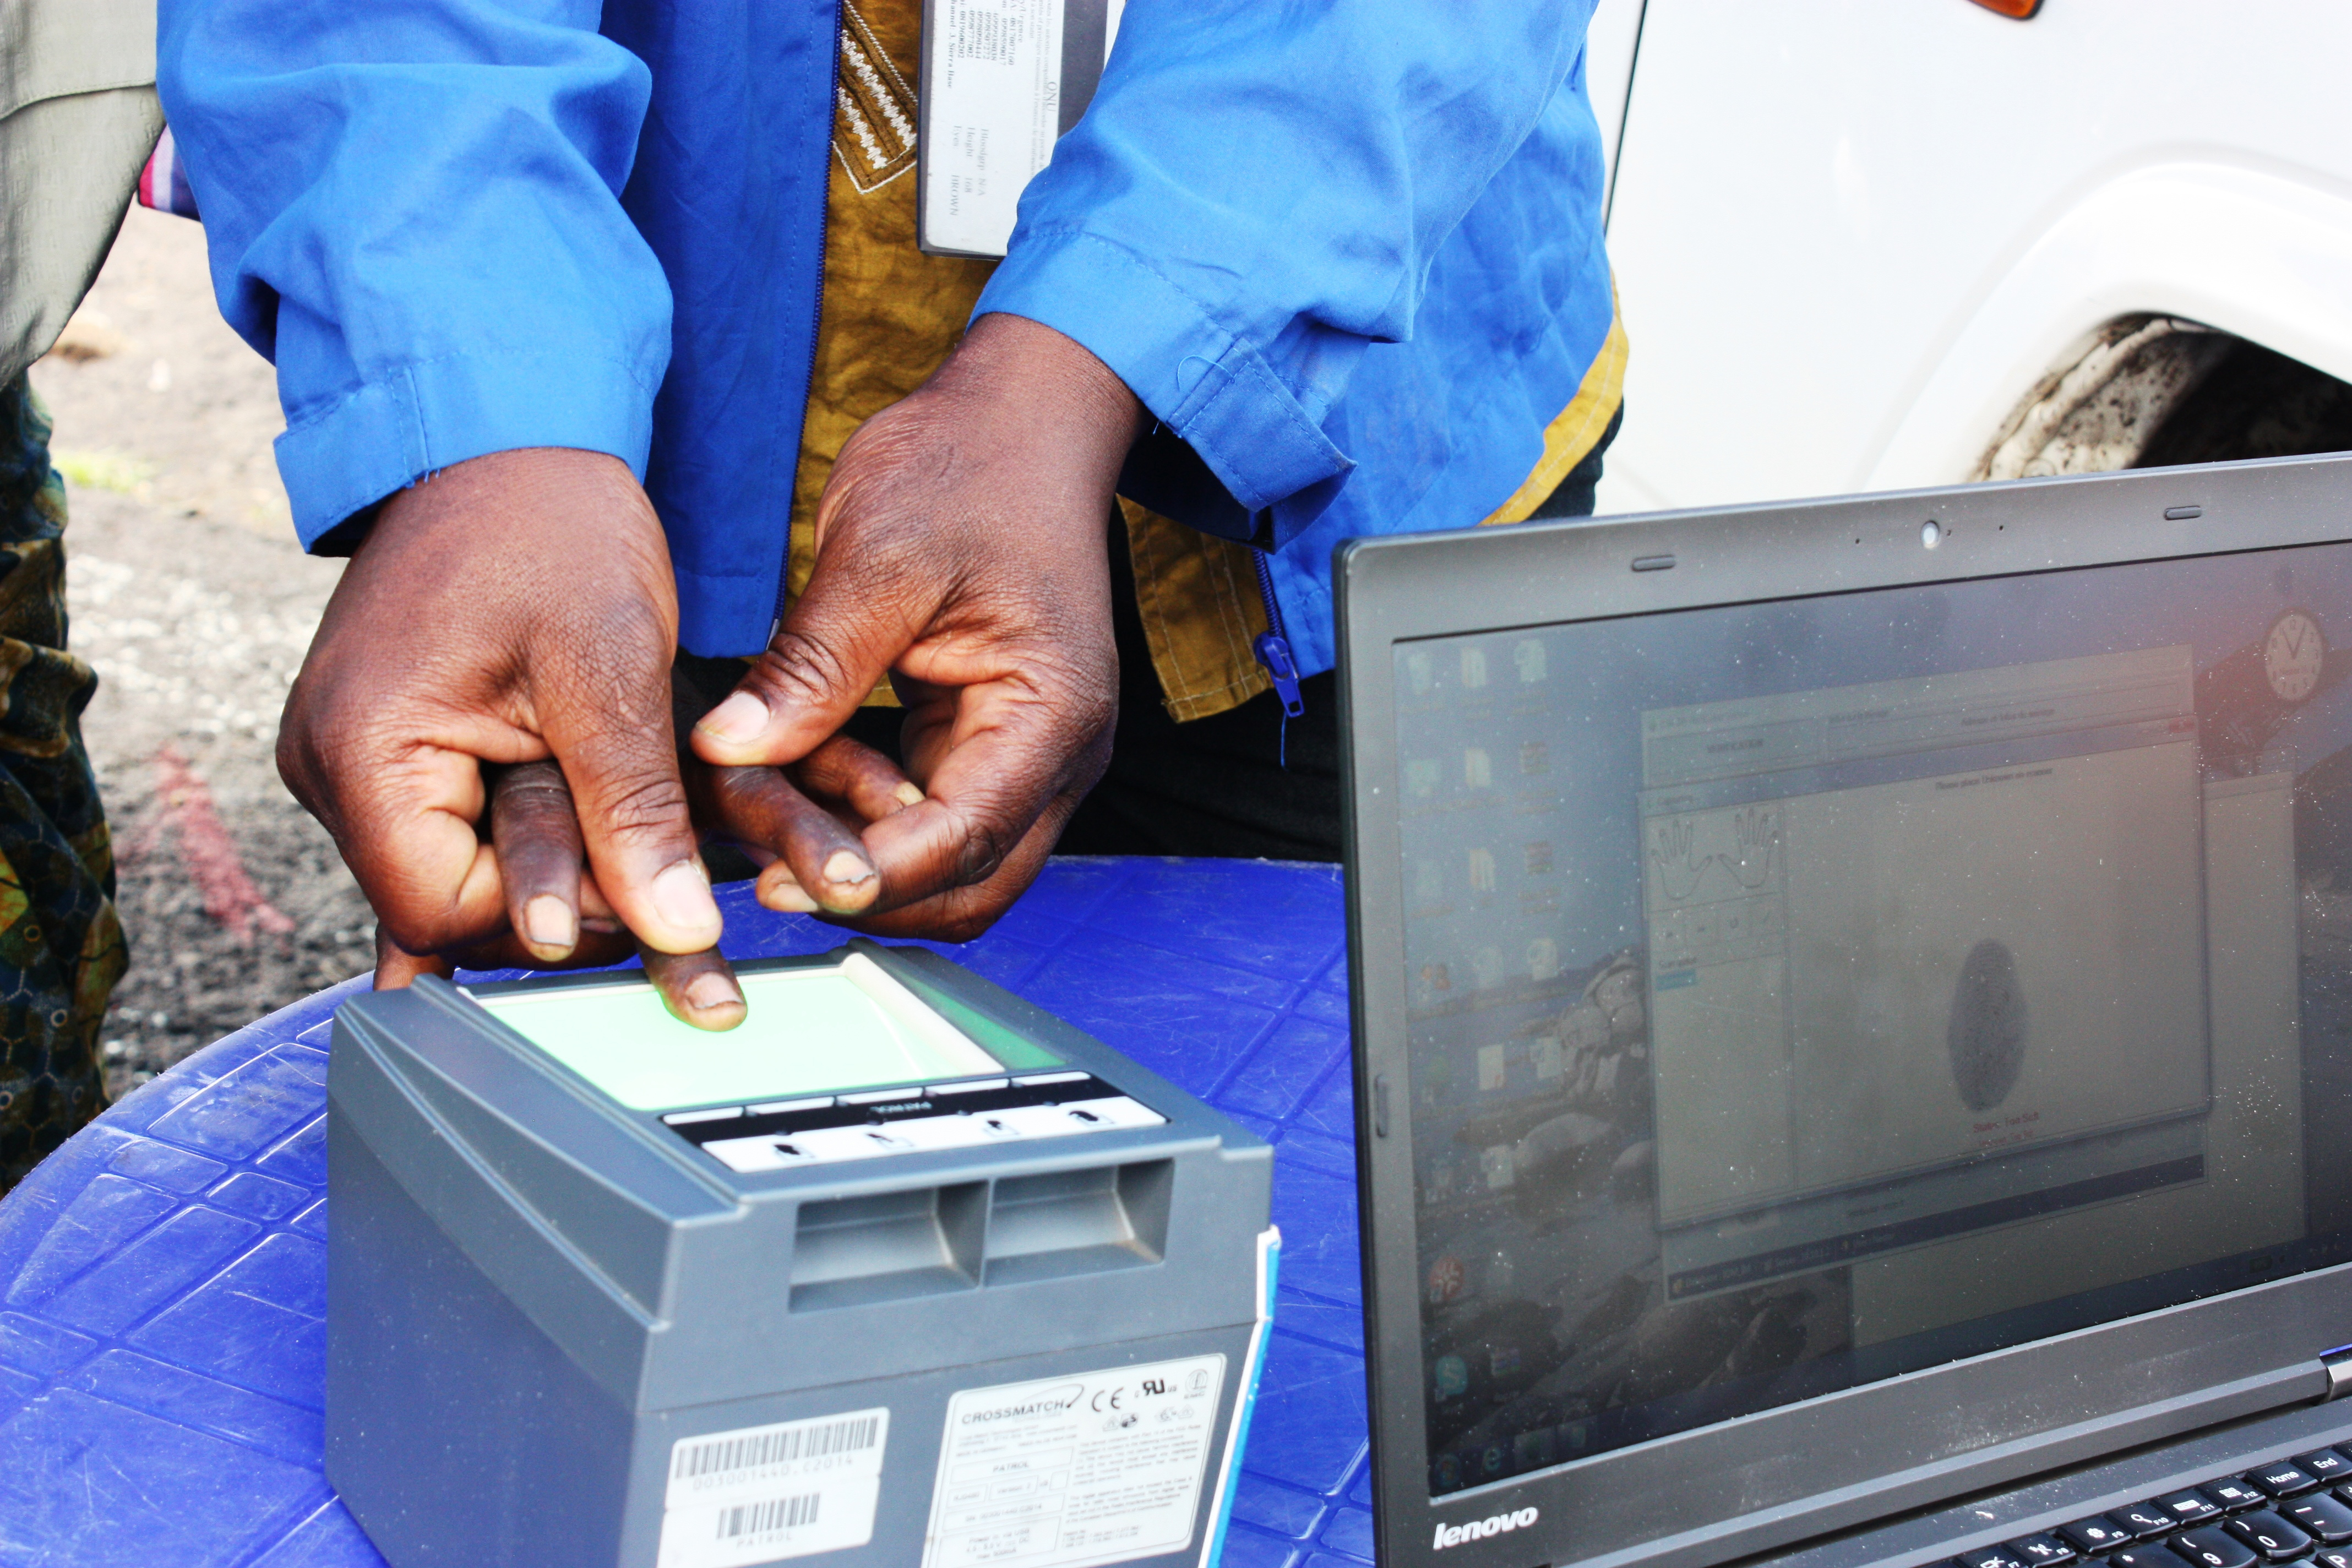 A biometric fingerprint system in use in an IDP camp in North Kivu, Democratic Republic of Congo